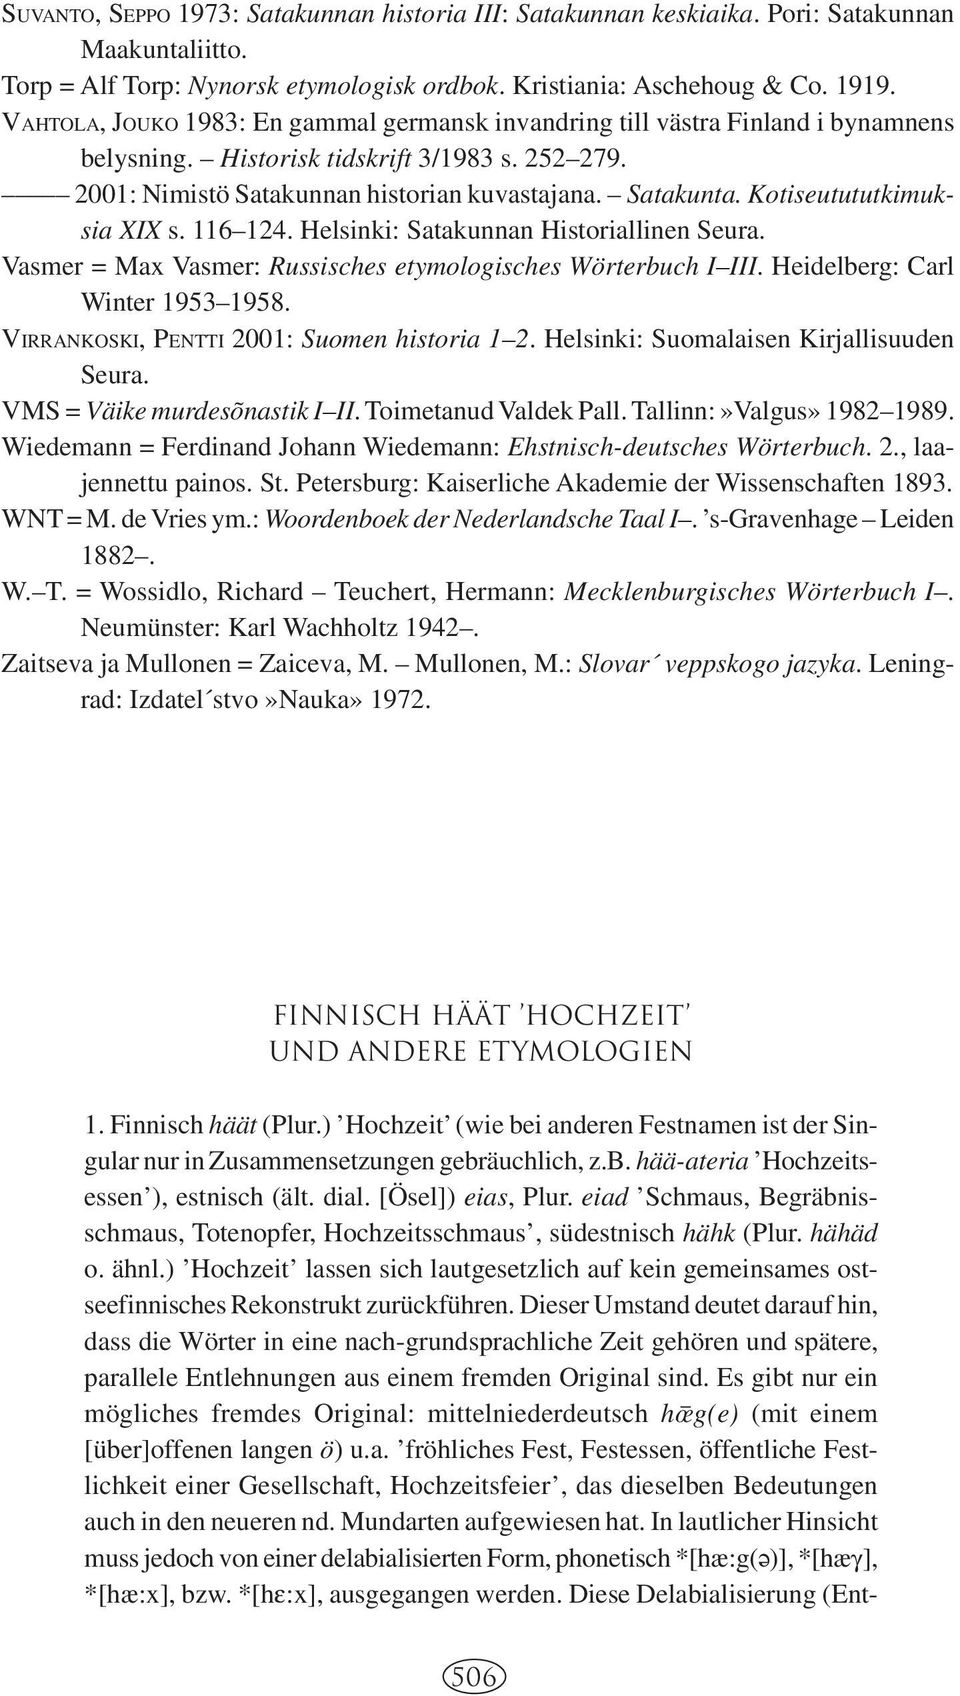 Kotiseutututkimuksia XIX s. 116 124. Helsinki: Satakunnan Historiallinen Seura. Vasmer = Max Vasmer: Russisches etymologisches Wörterbuch I III. Heidelberg: Carl Winter 1953 1958.